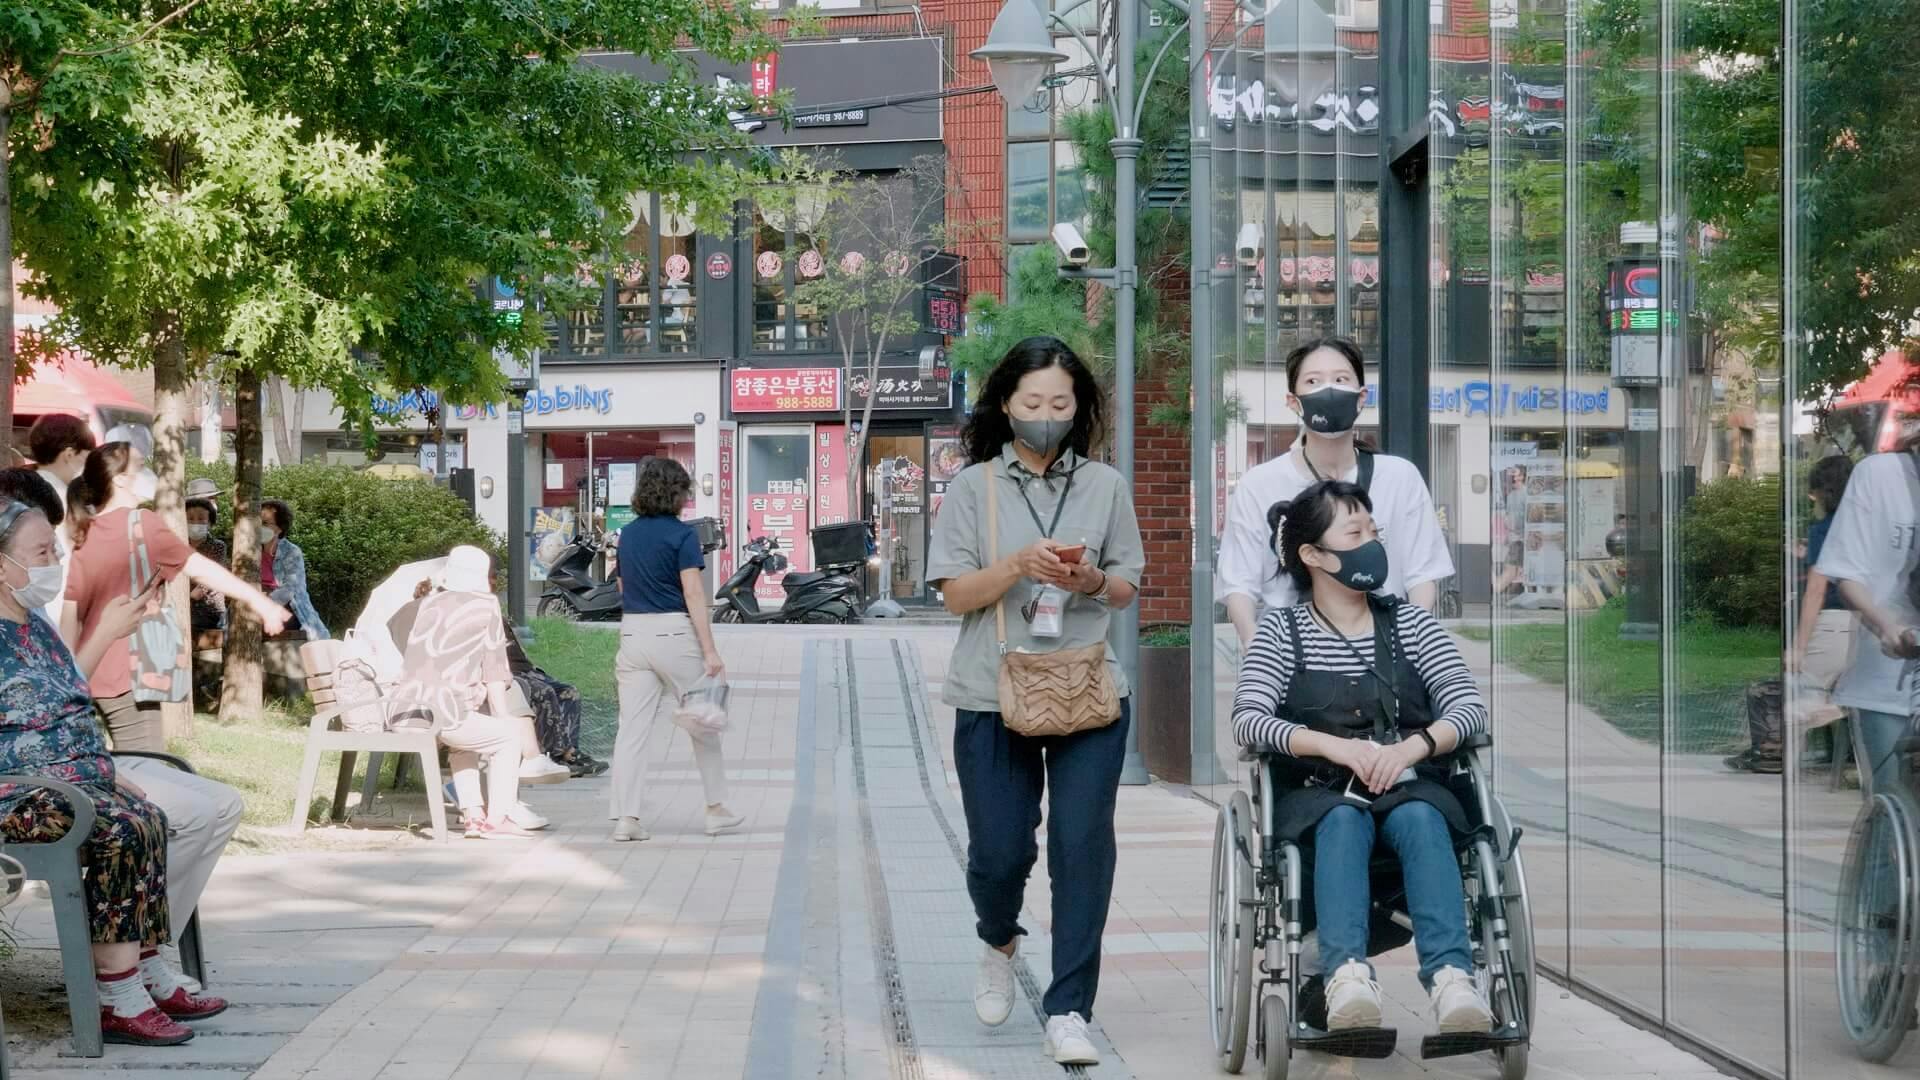 미아사거리역 주변에서 휠체어를 타고 갈 수 있는 곳에 대한 정보를 직접 수집하는 무의 휠체어 특공대. 무의는 서울 주요 지하철역 50곳 주변 번화가의 정보를 수집하고 있다.